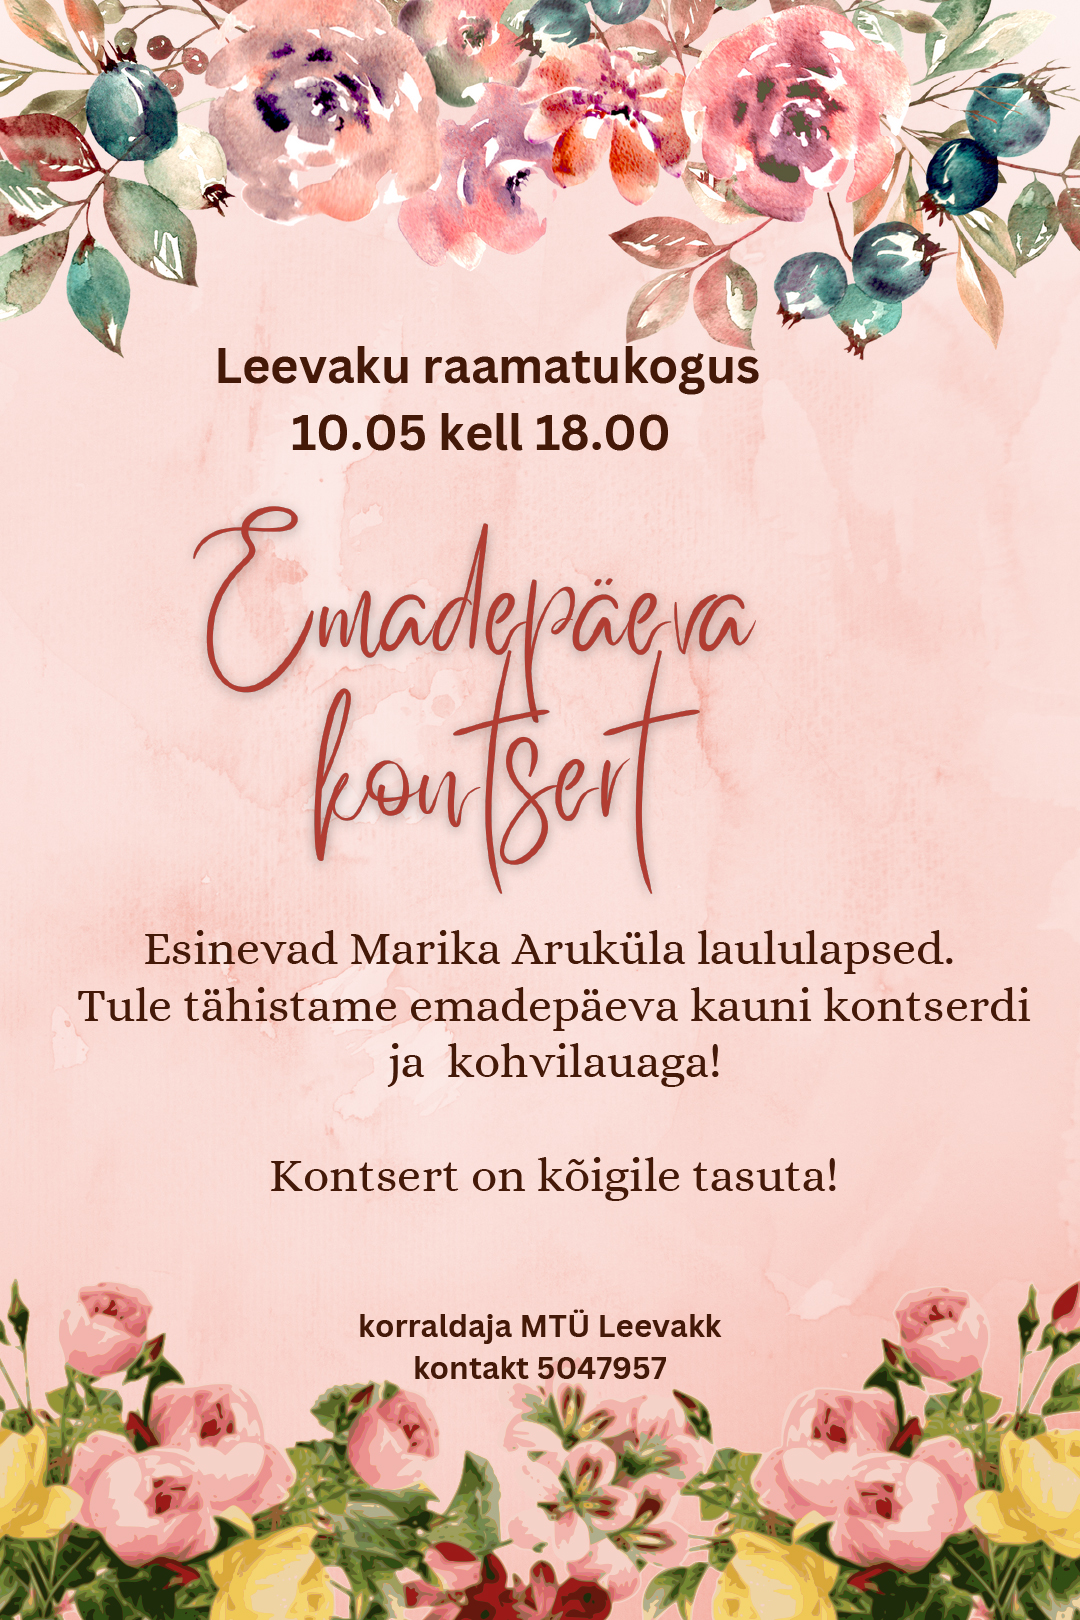 Emadepäeva kontsert Leevaku raamatukogus @ Leevaku raamatukogu | Leevaku | Põlva maakond | Eesti